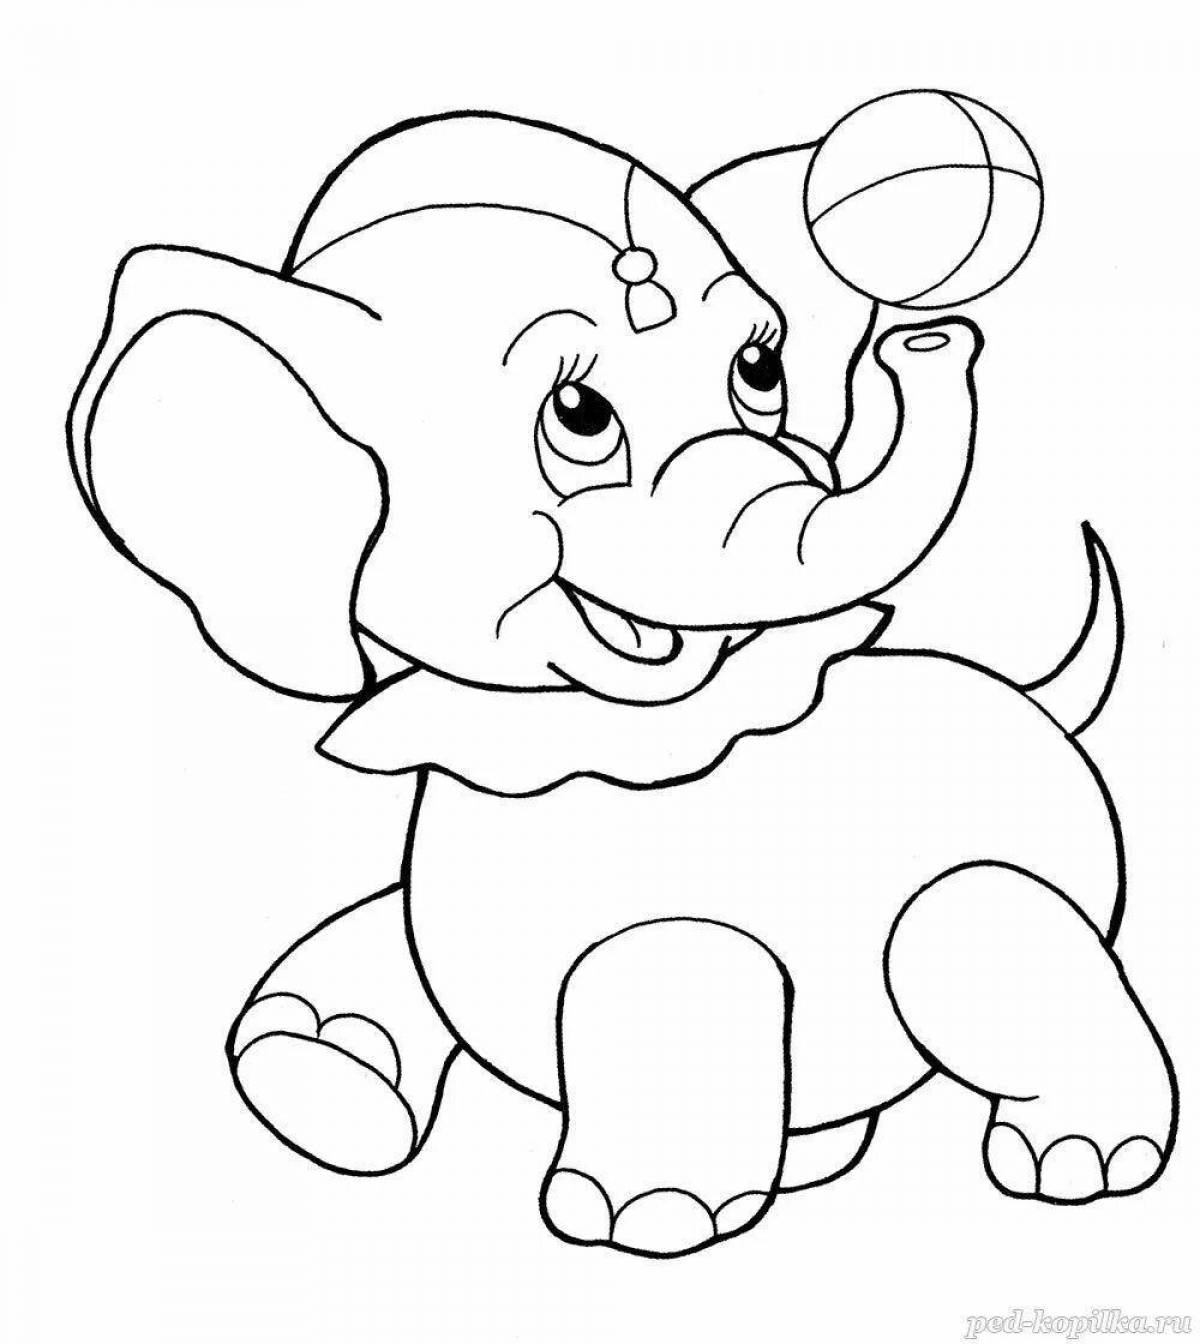 Веселая раскраска слона для детей